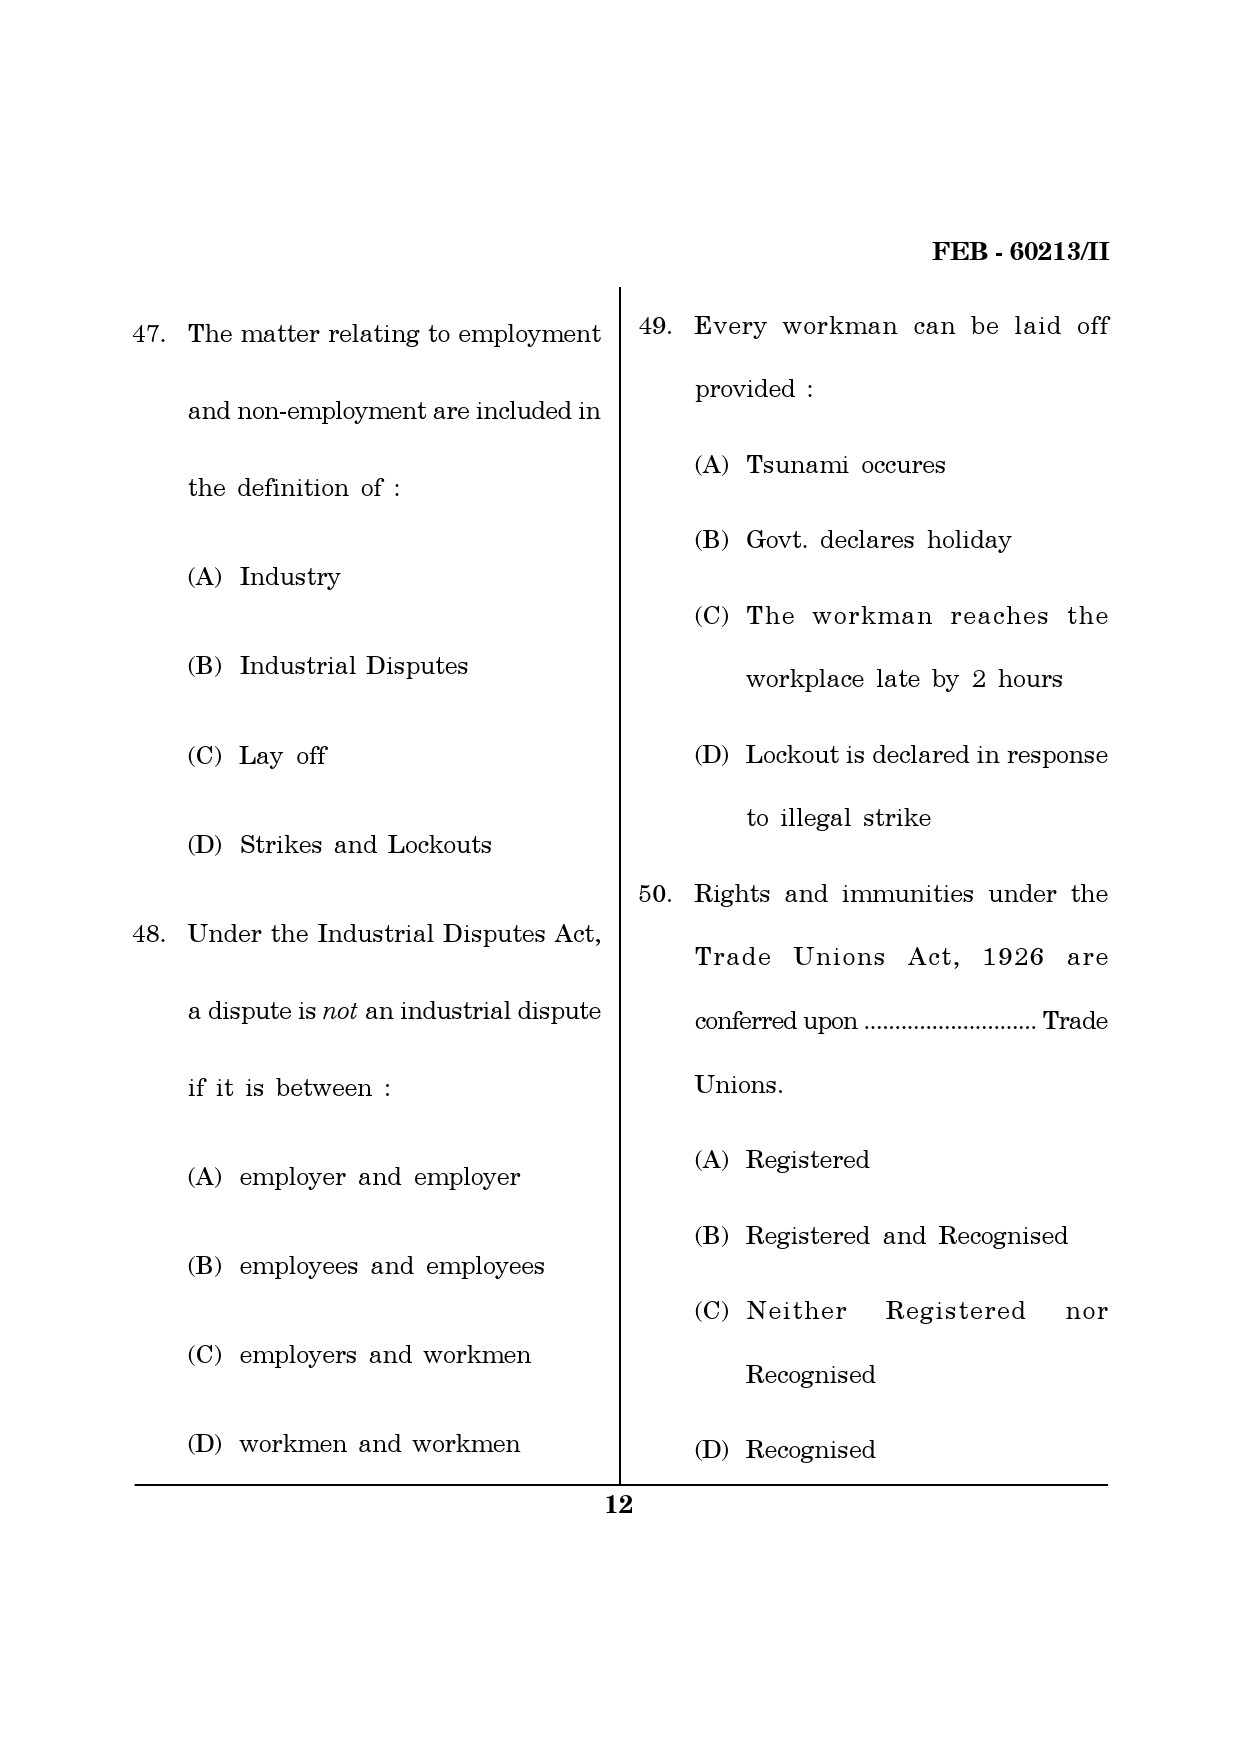 Maharashtra SET Law Question Paper II February 2013 12